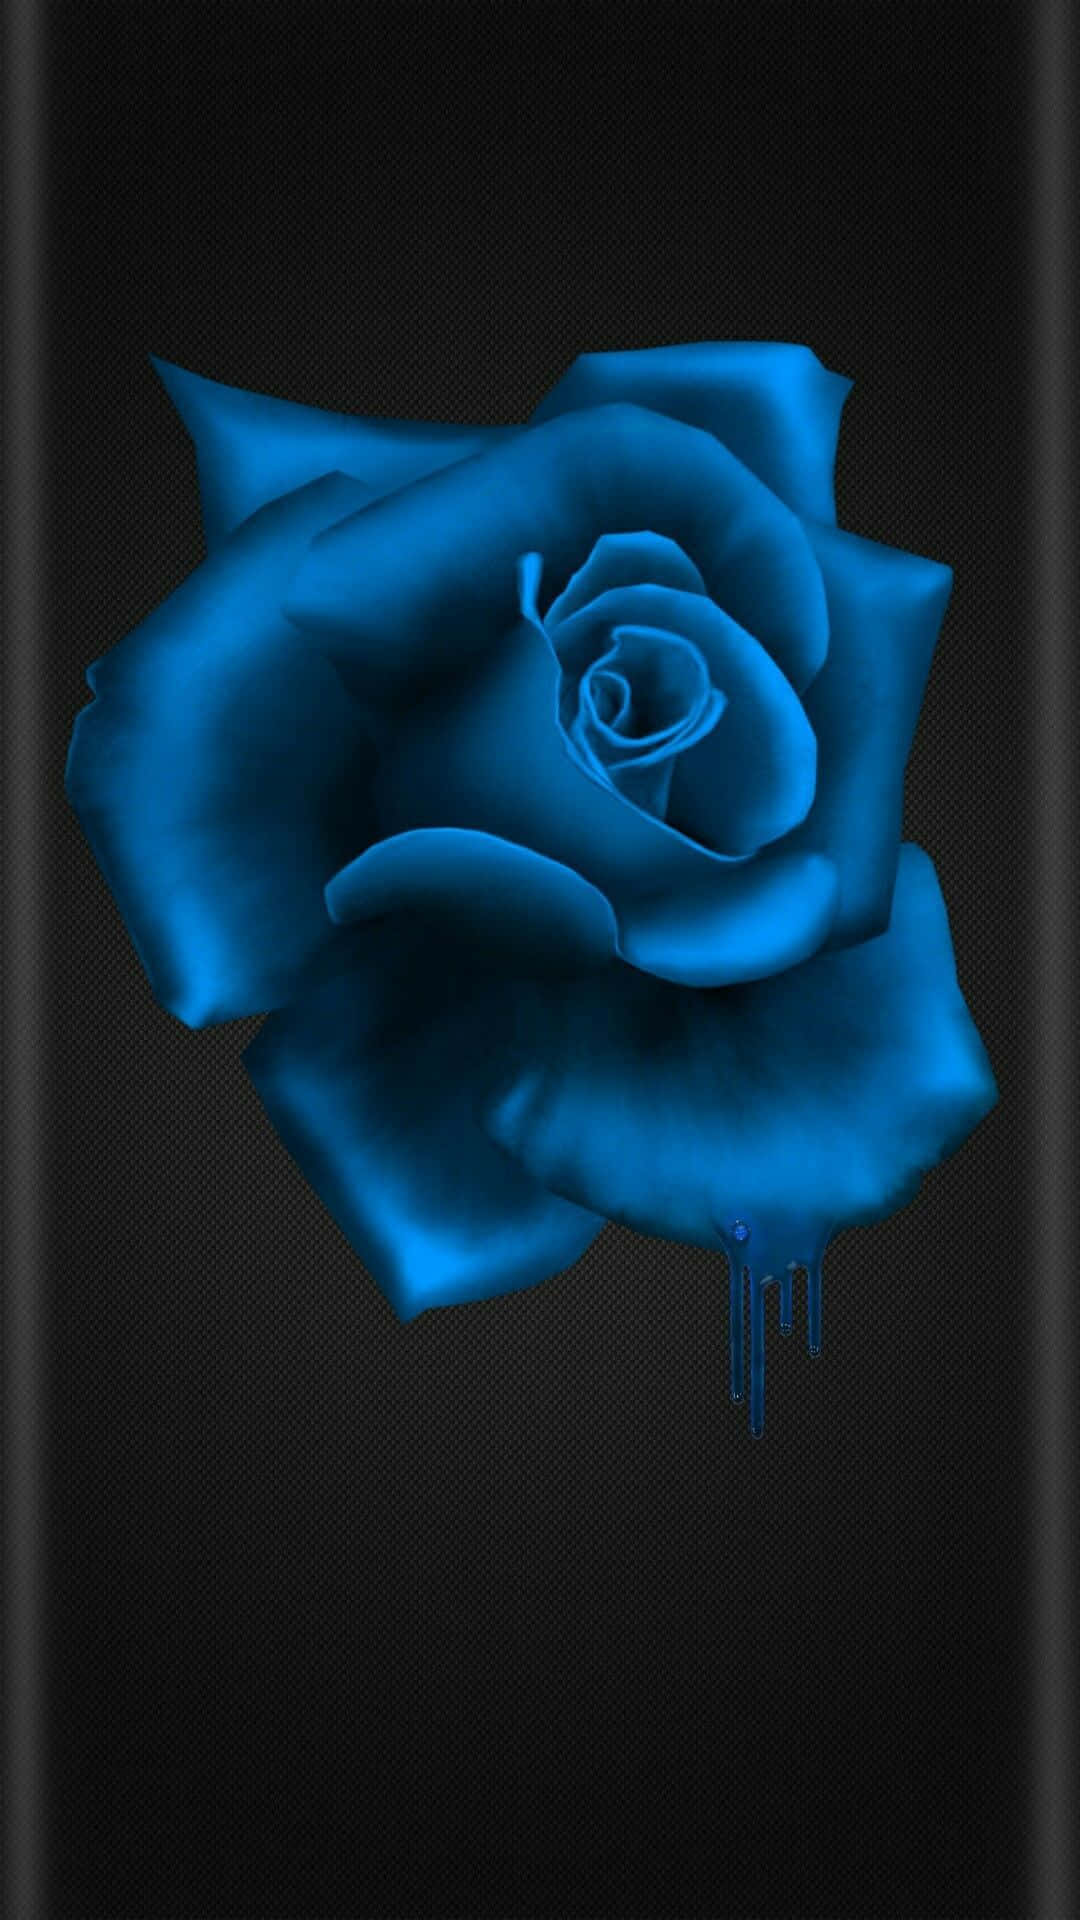 Immagini Di Rose Blu